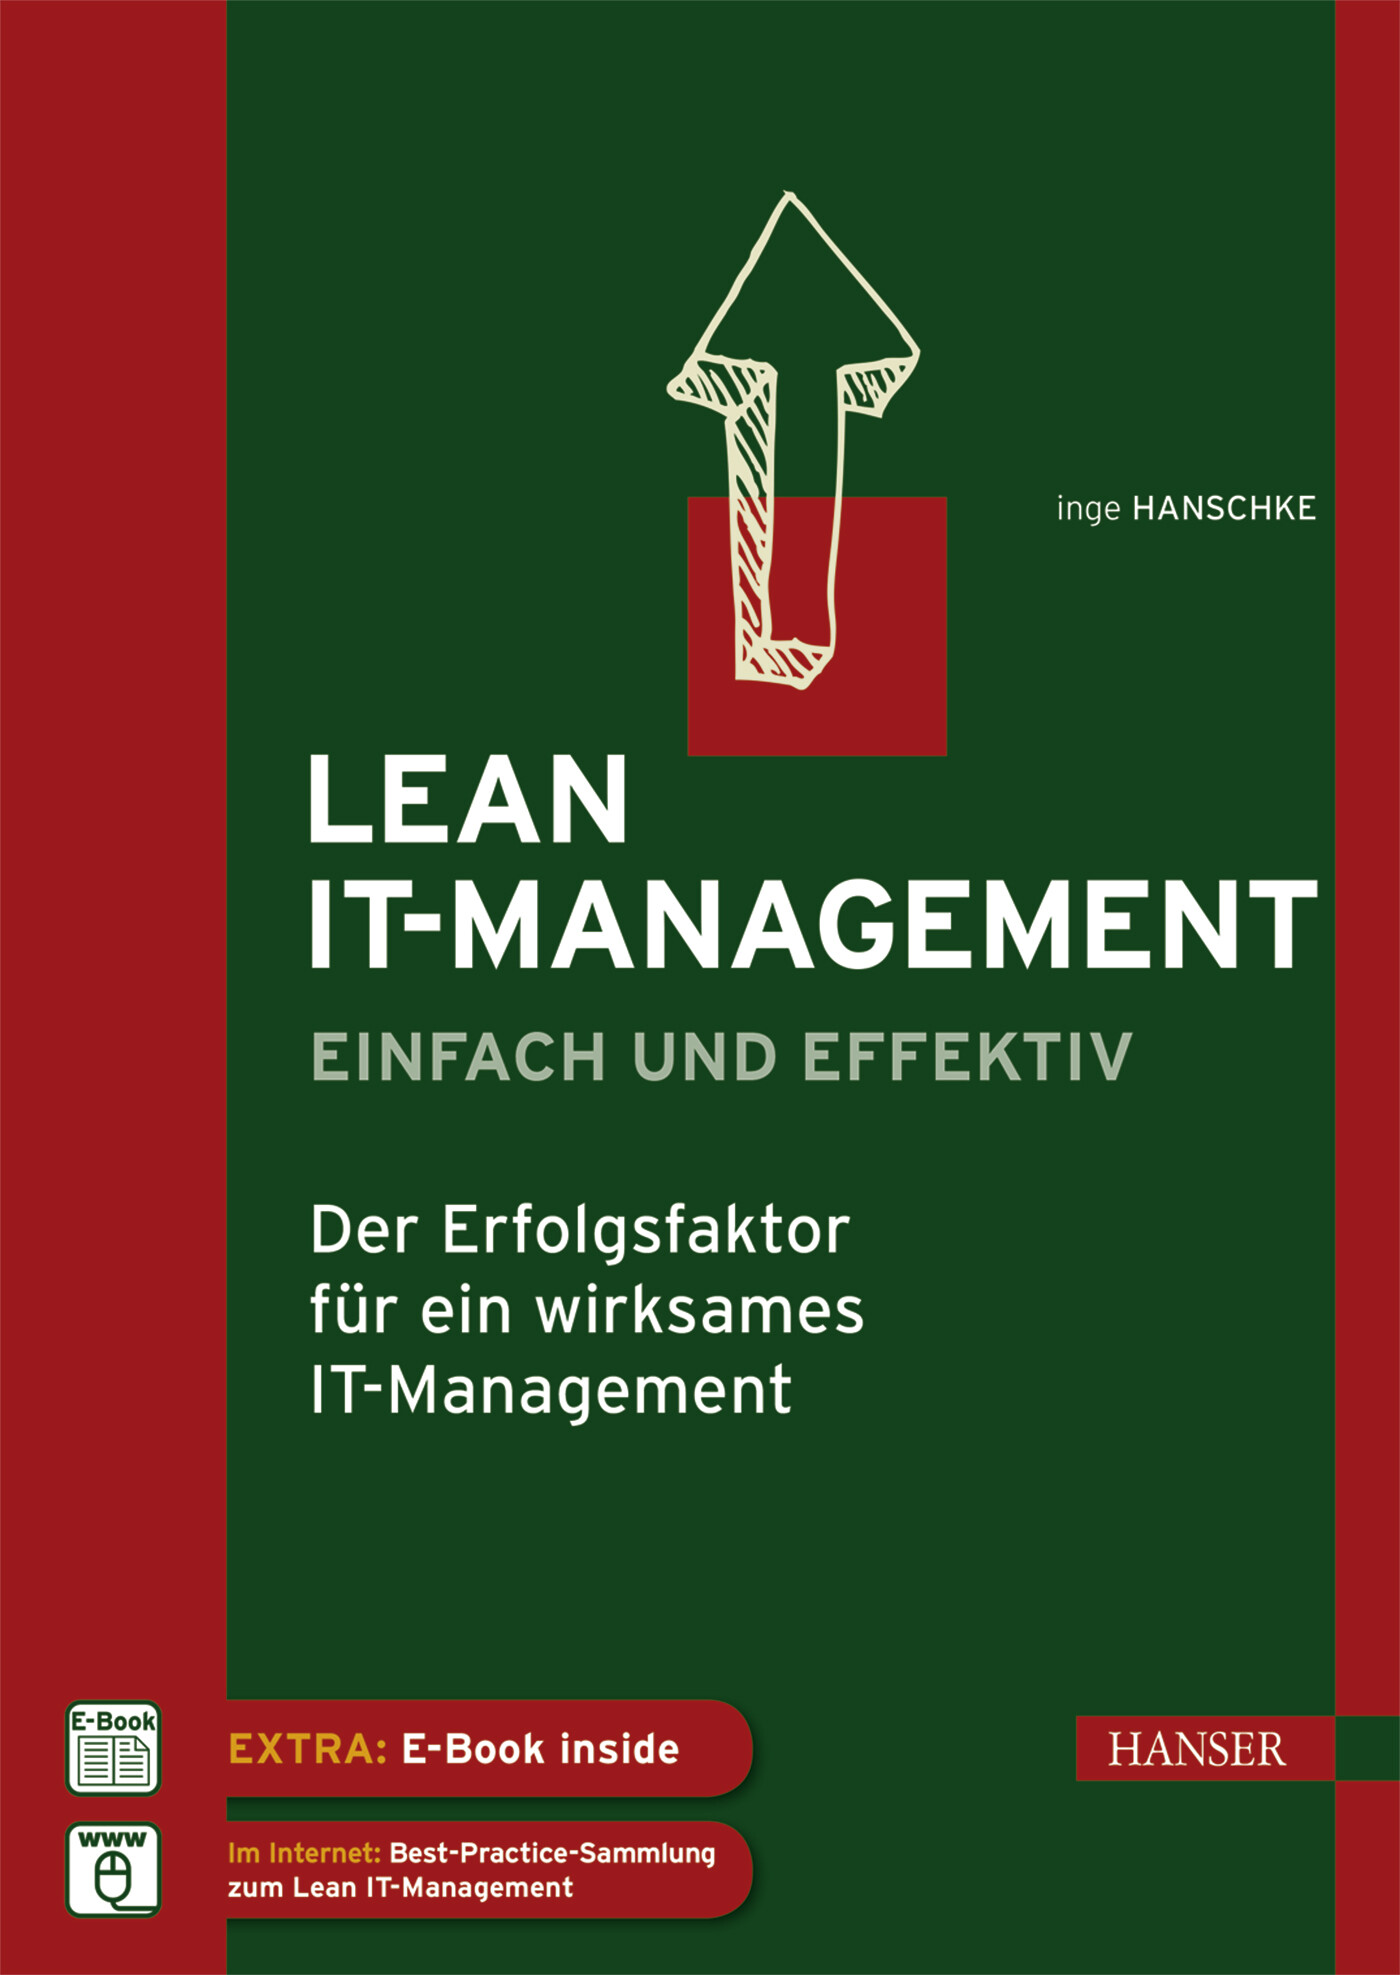 Lean IT-Management - Einfach und Effektiv